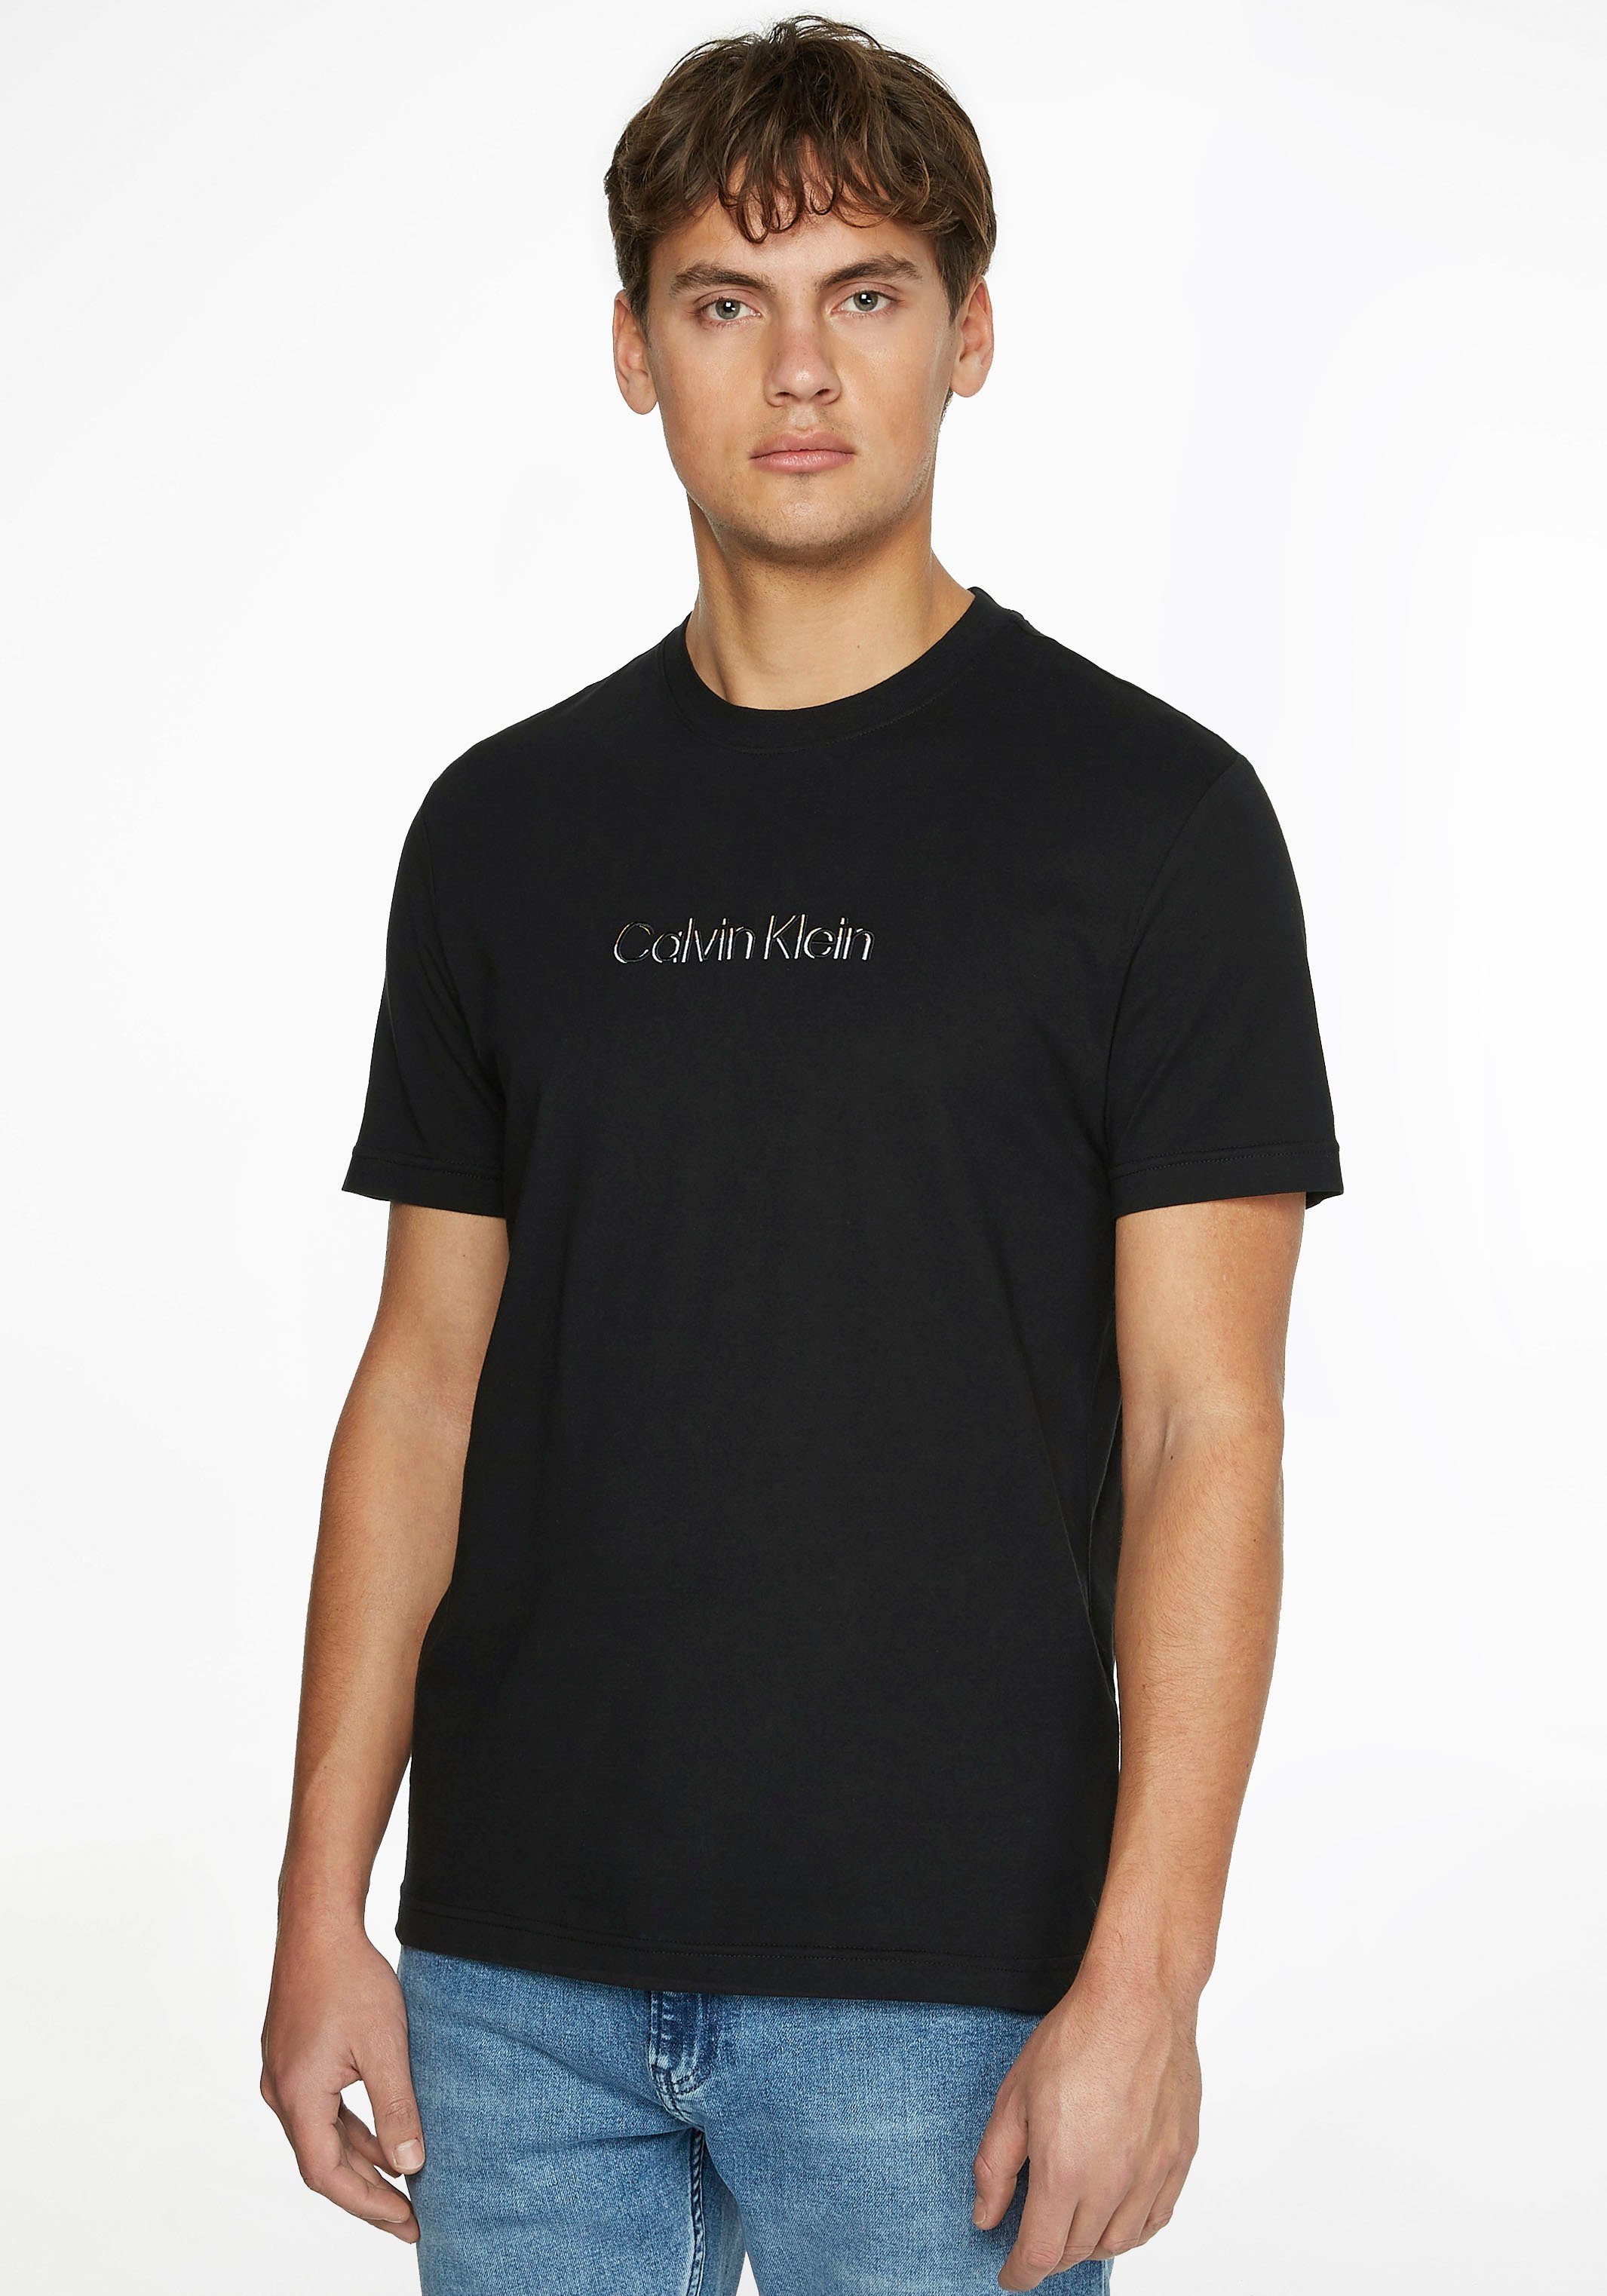 T-Shirt MULTI LOGO schwarz Calvin COLOR Klein